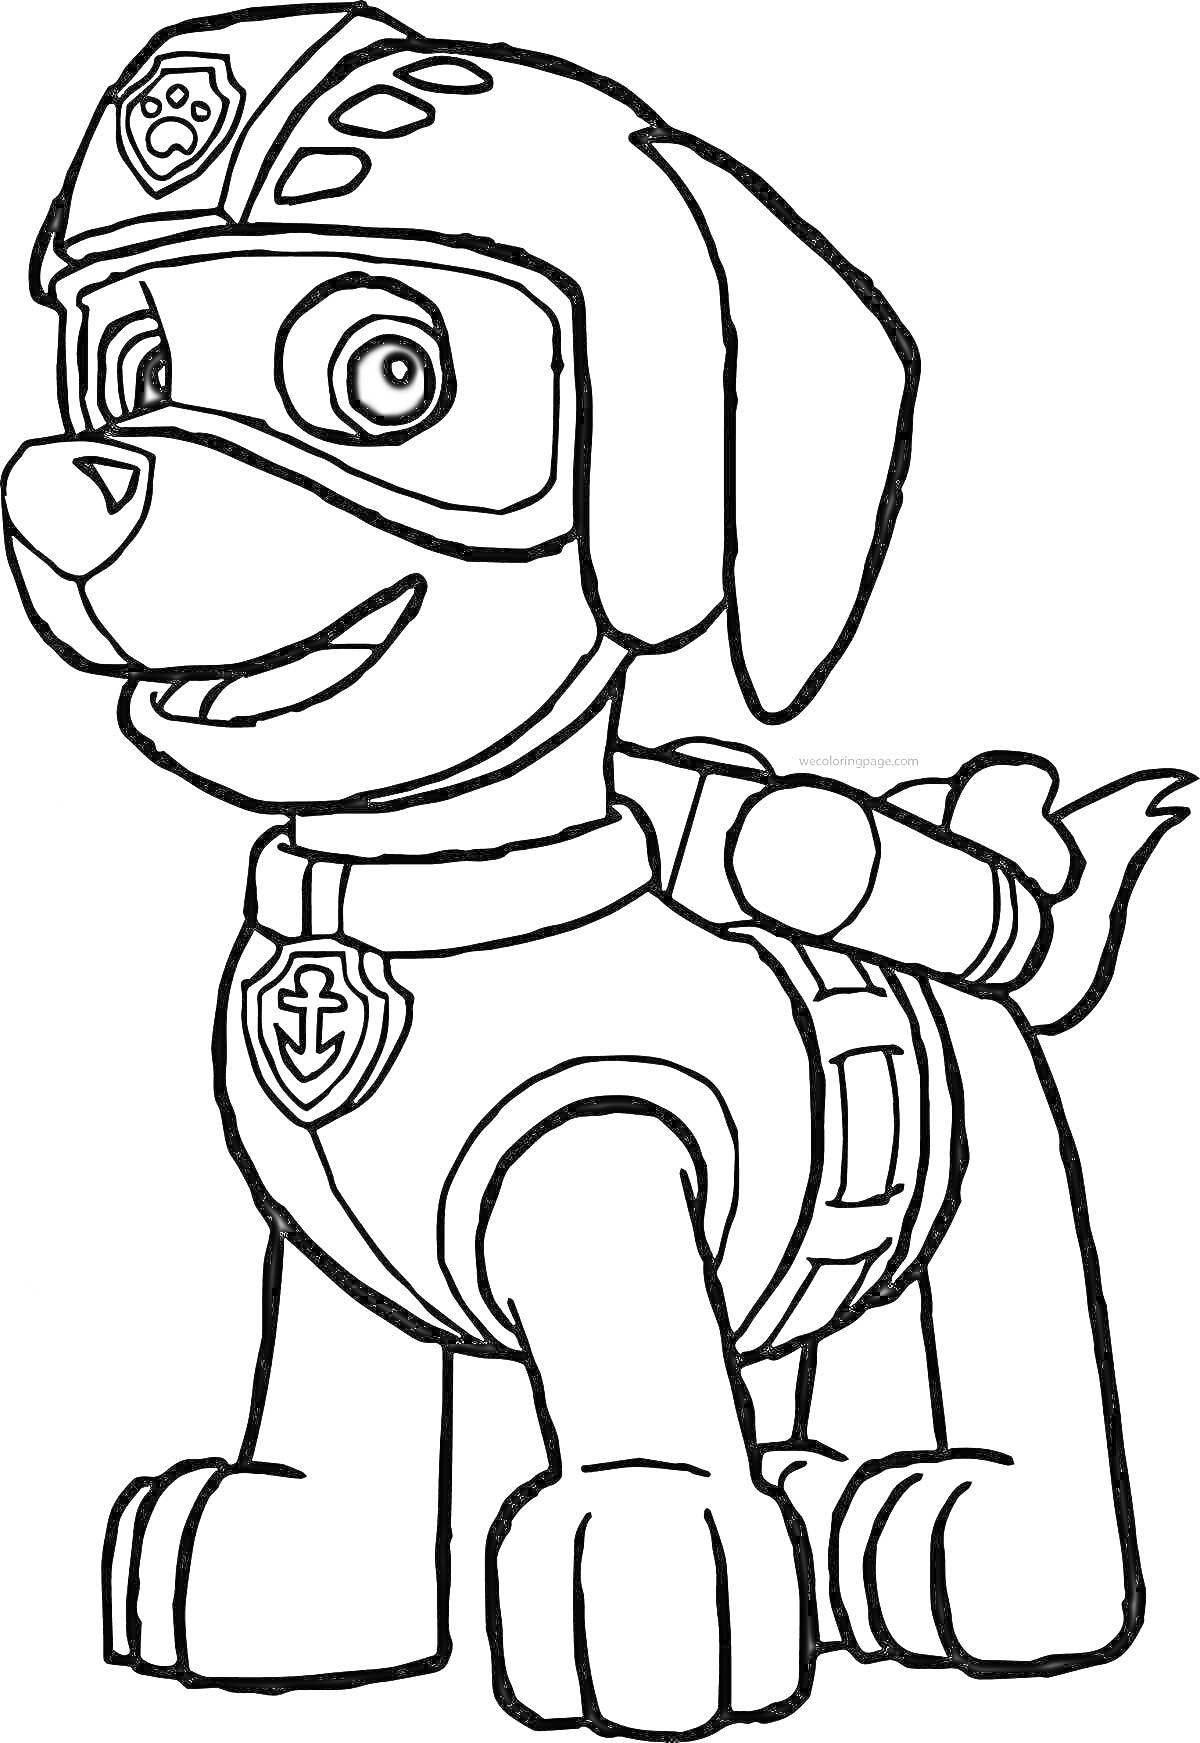 Раскраска Собачий патруль - щенок в защитной каске и очках с эмблемой якоря